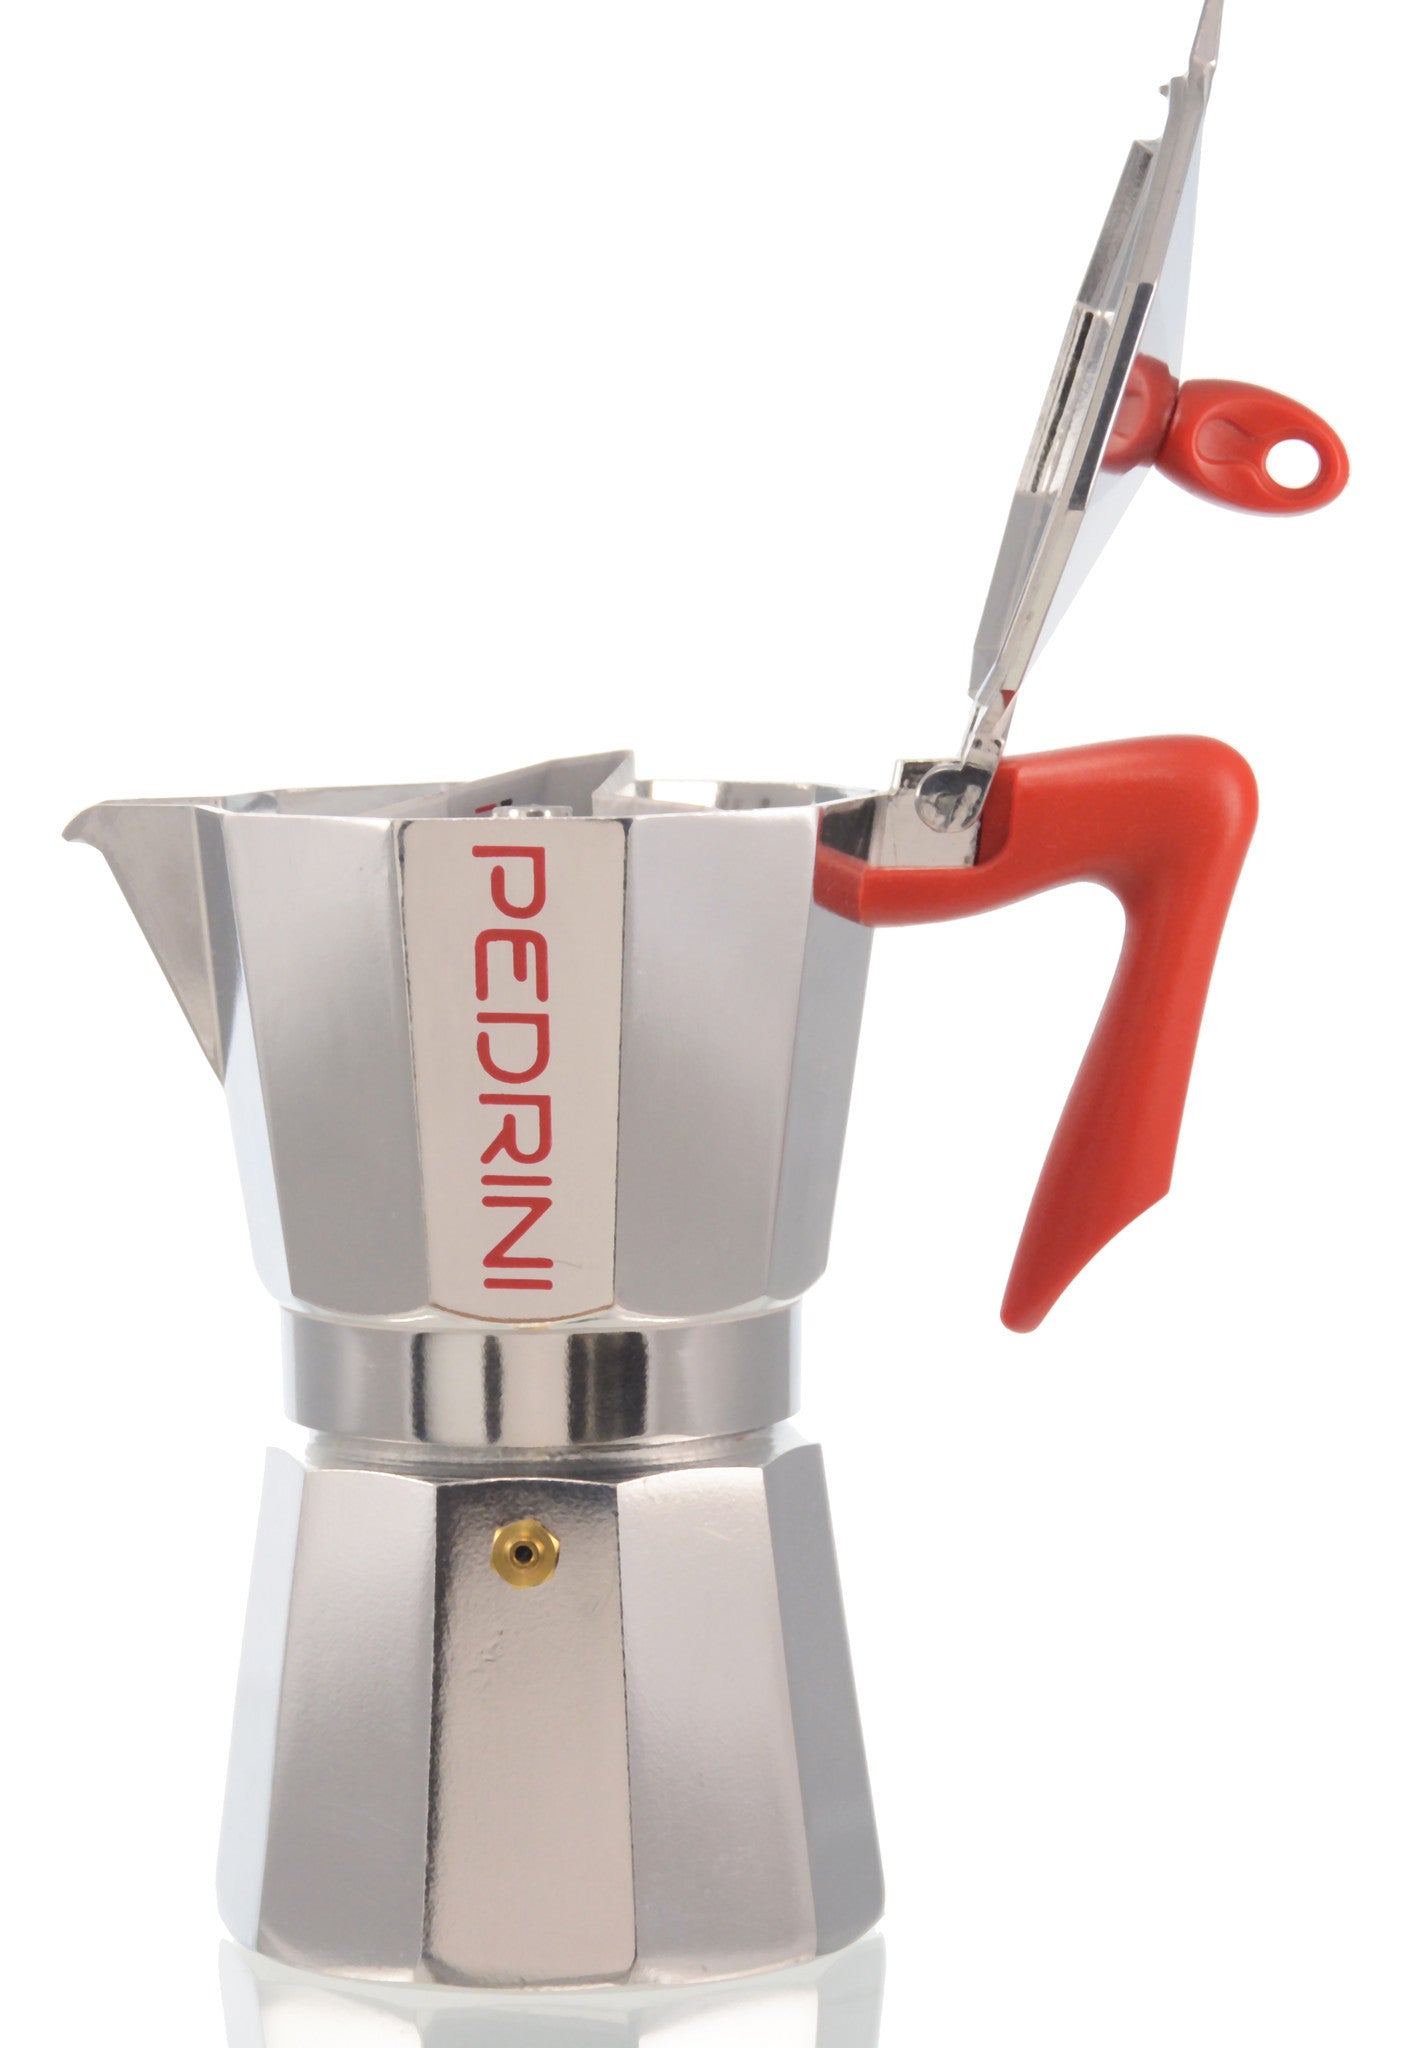 Coffee Maker Pedrini, Italian Espresso Machine 